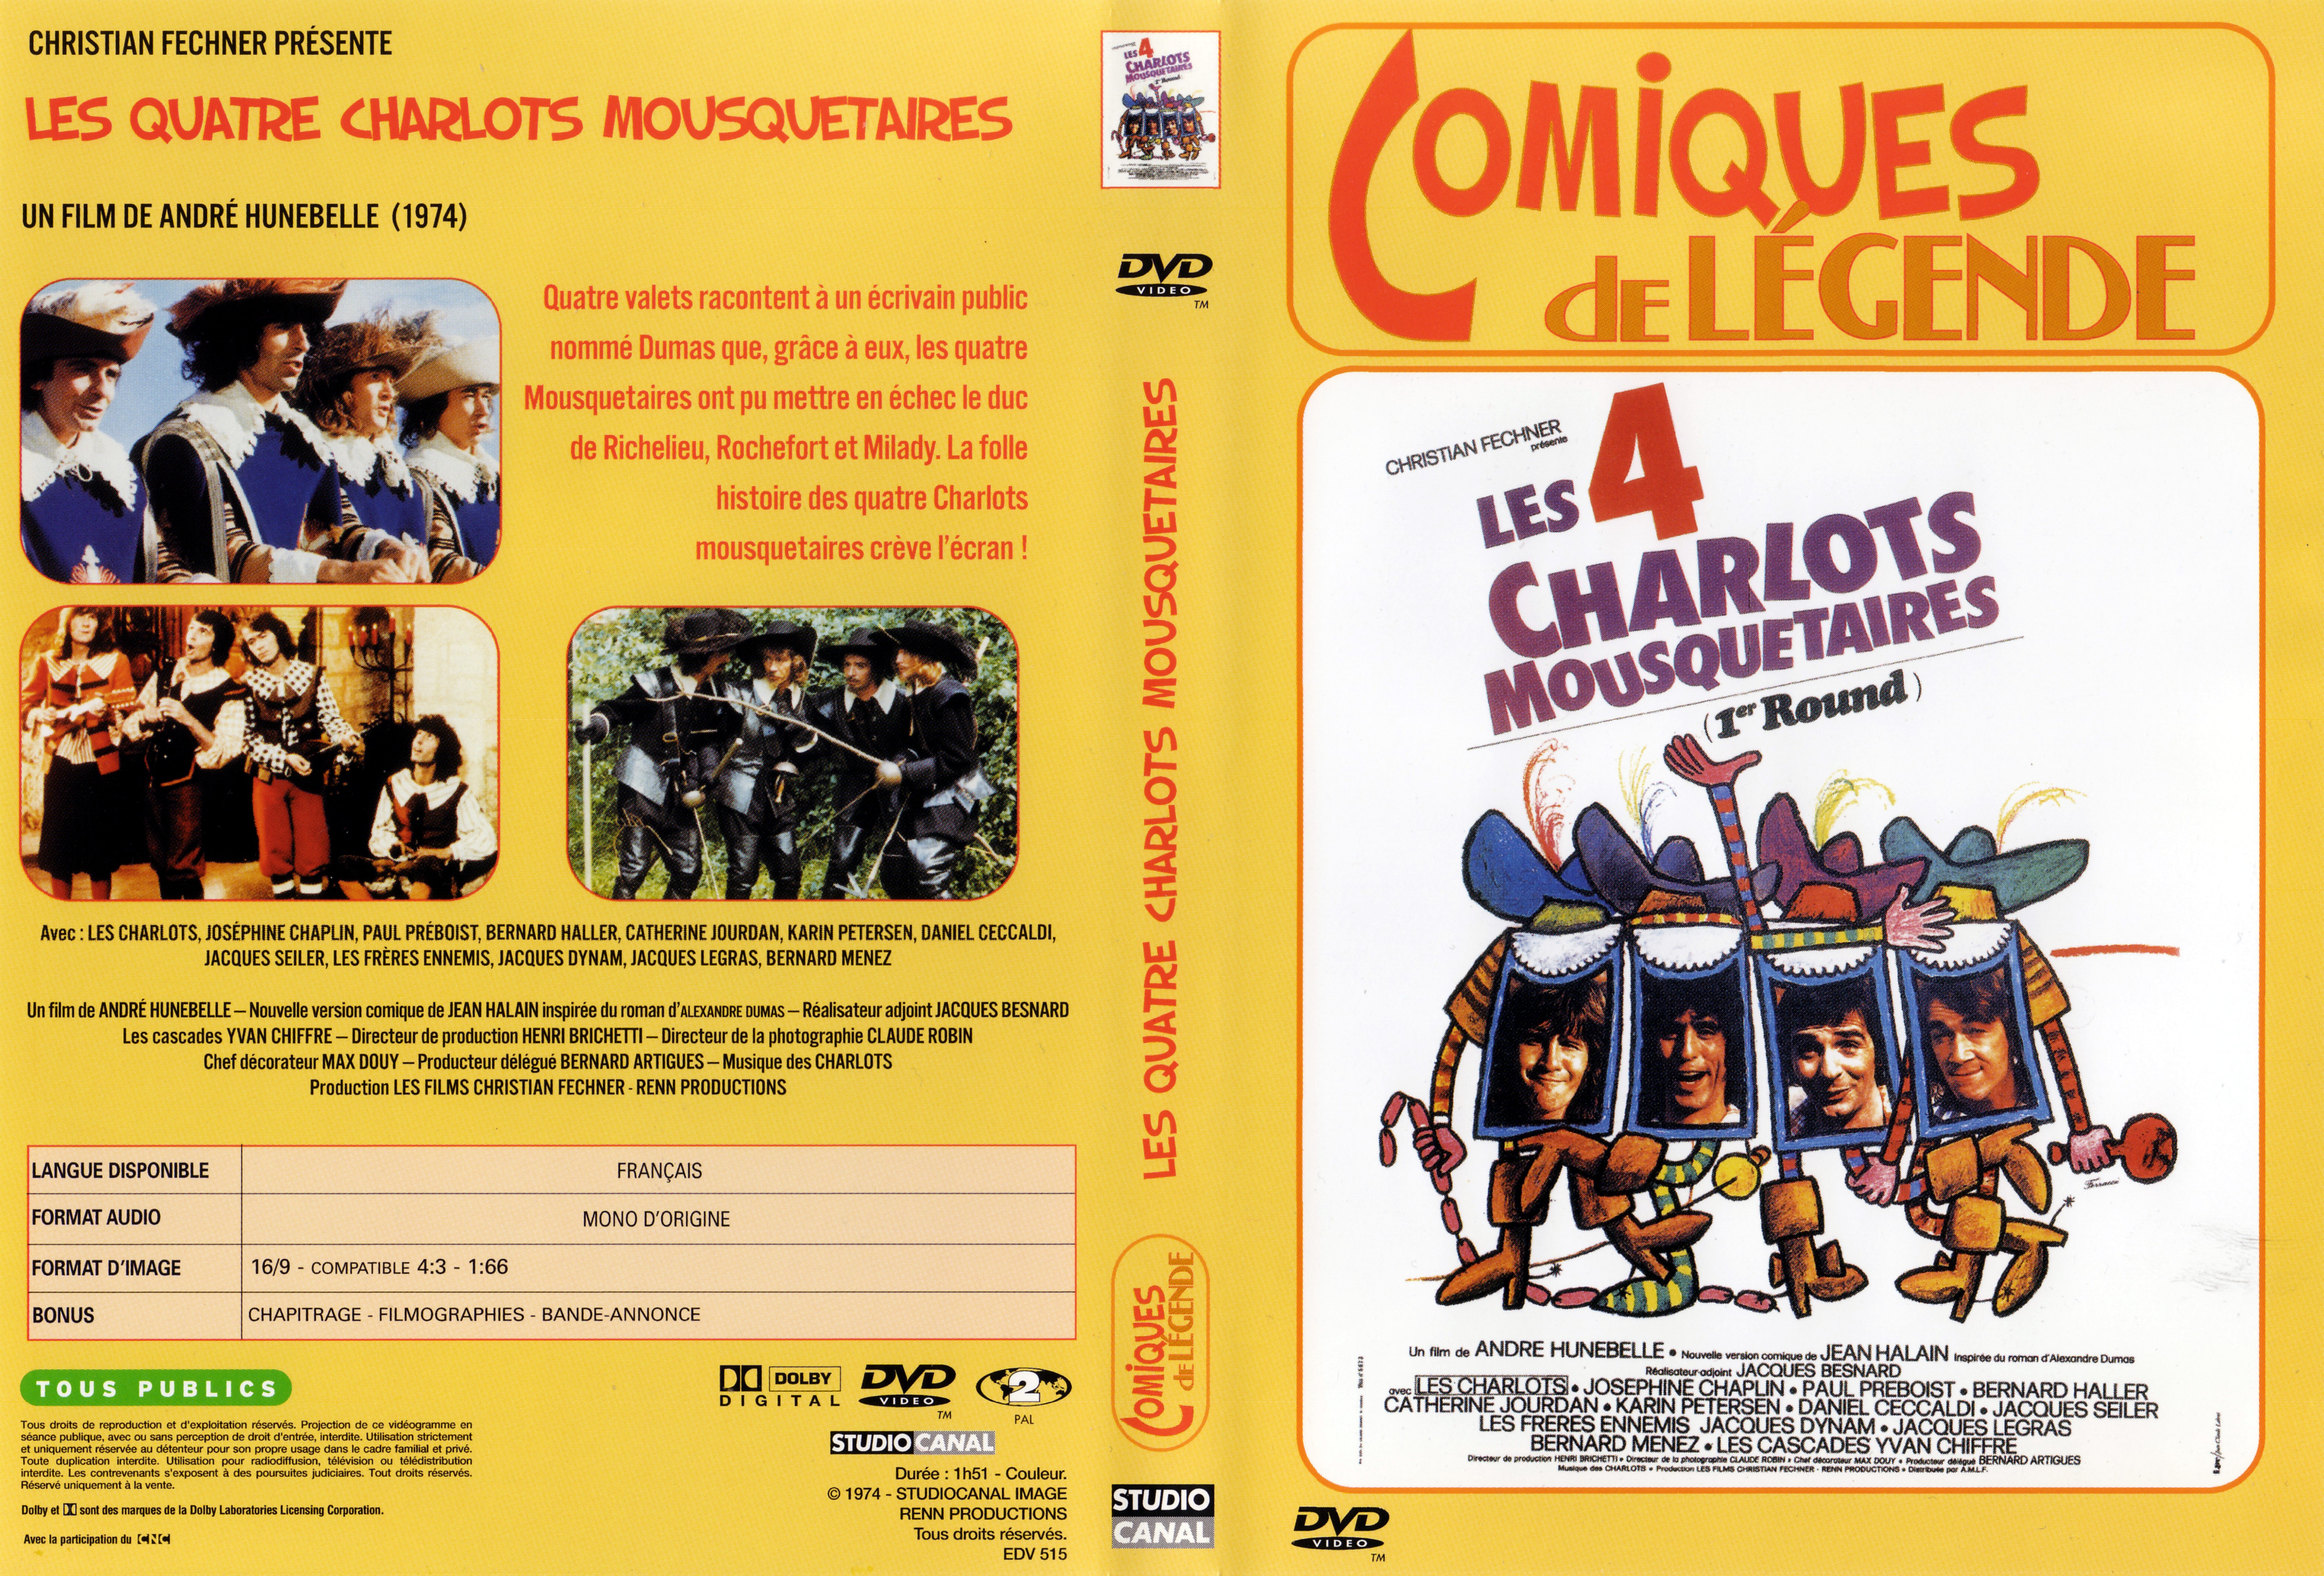 Jaquette DVD Les 4 charlots mousquetaires v2